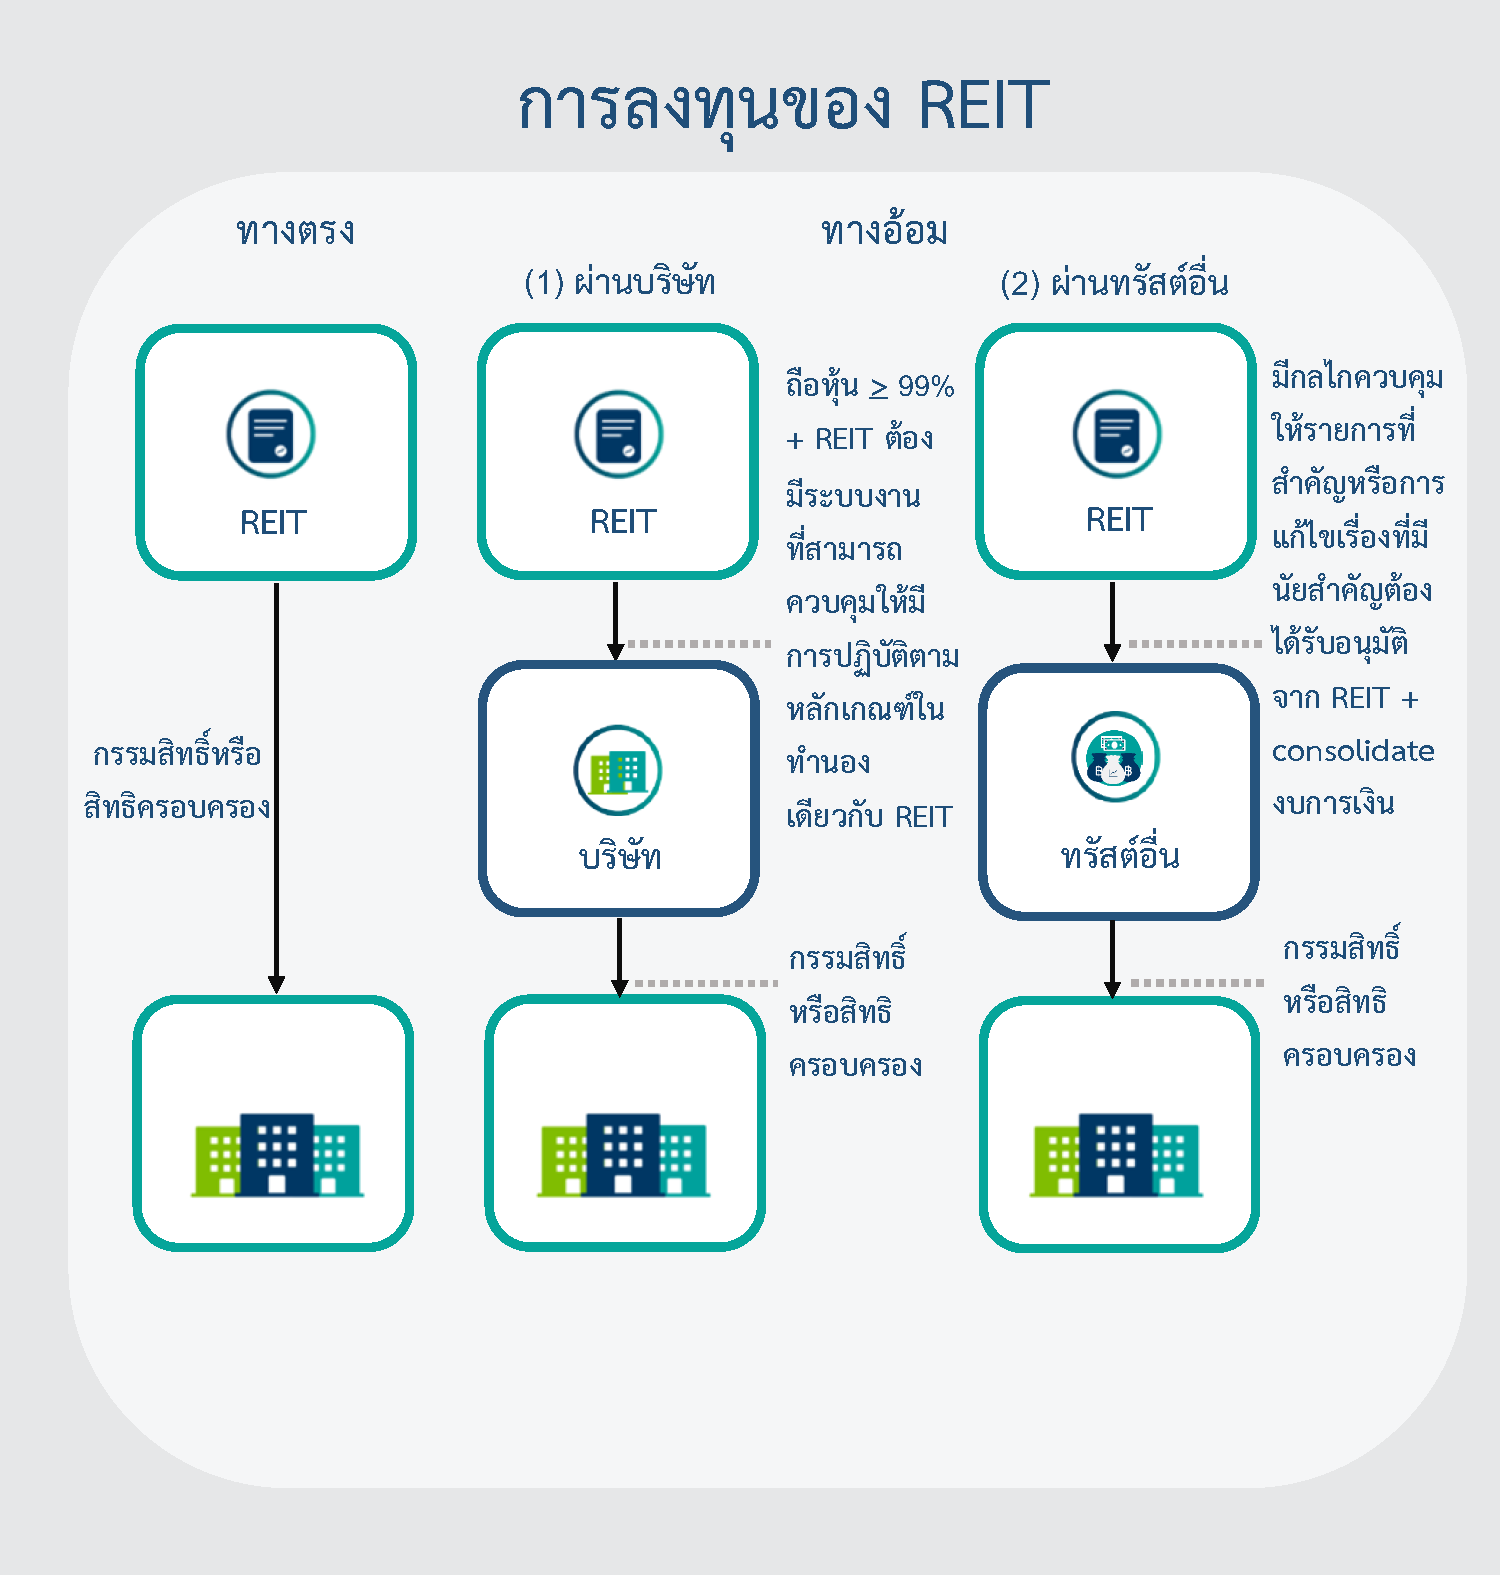 Thai Realestateinvestmenttrust